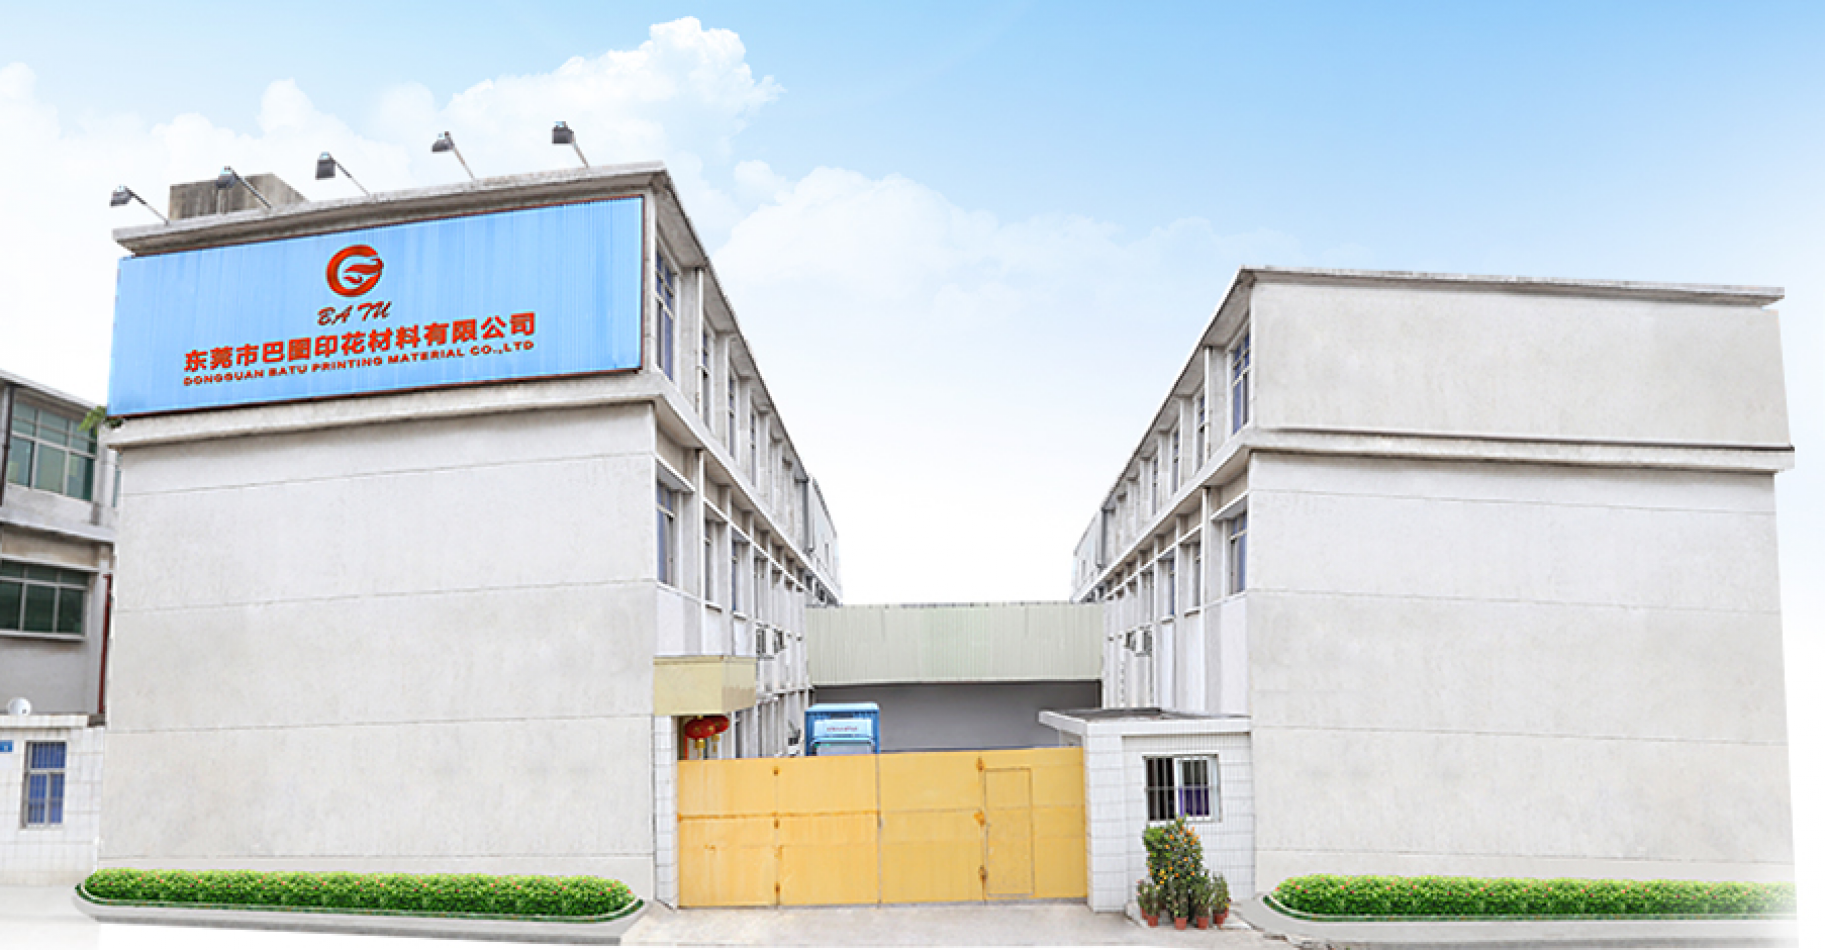 Dongguan Batu Printing Material Co., LTD